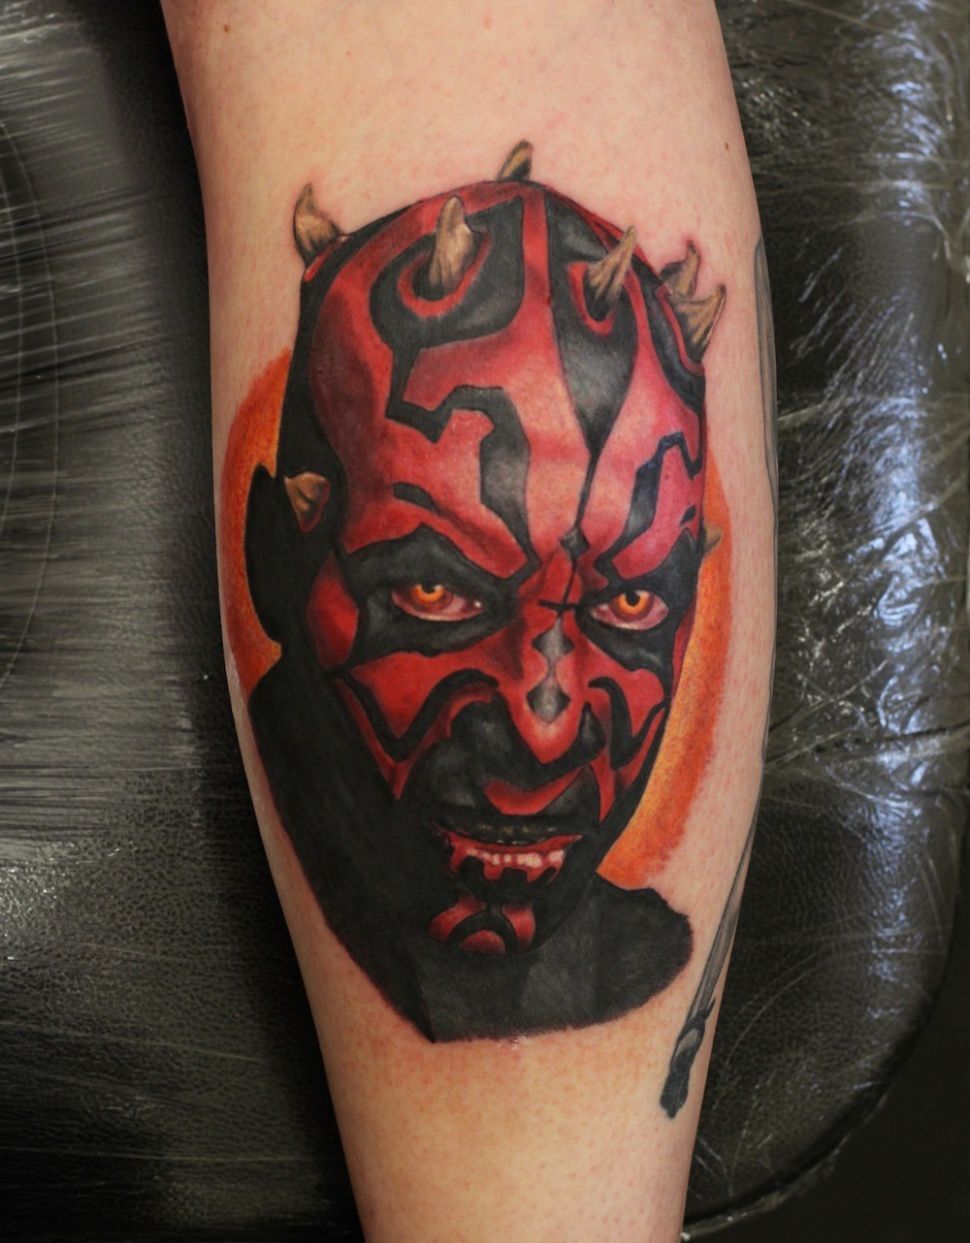 60 татуировок на тему Star Wars